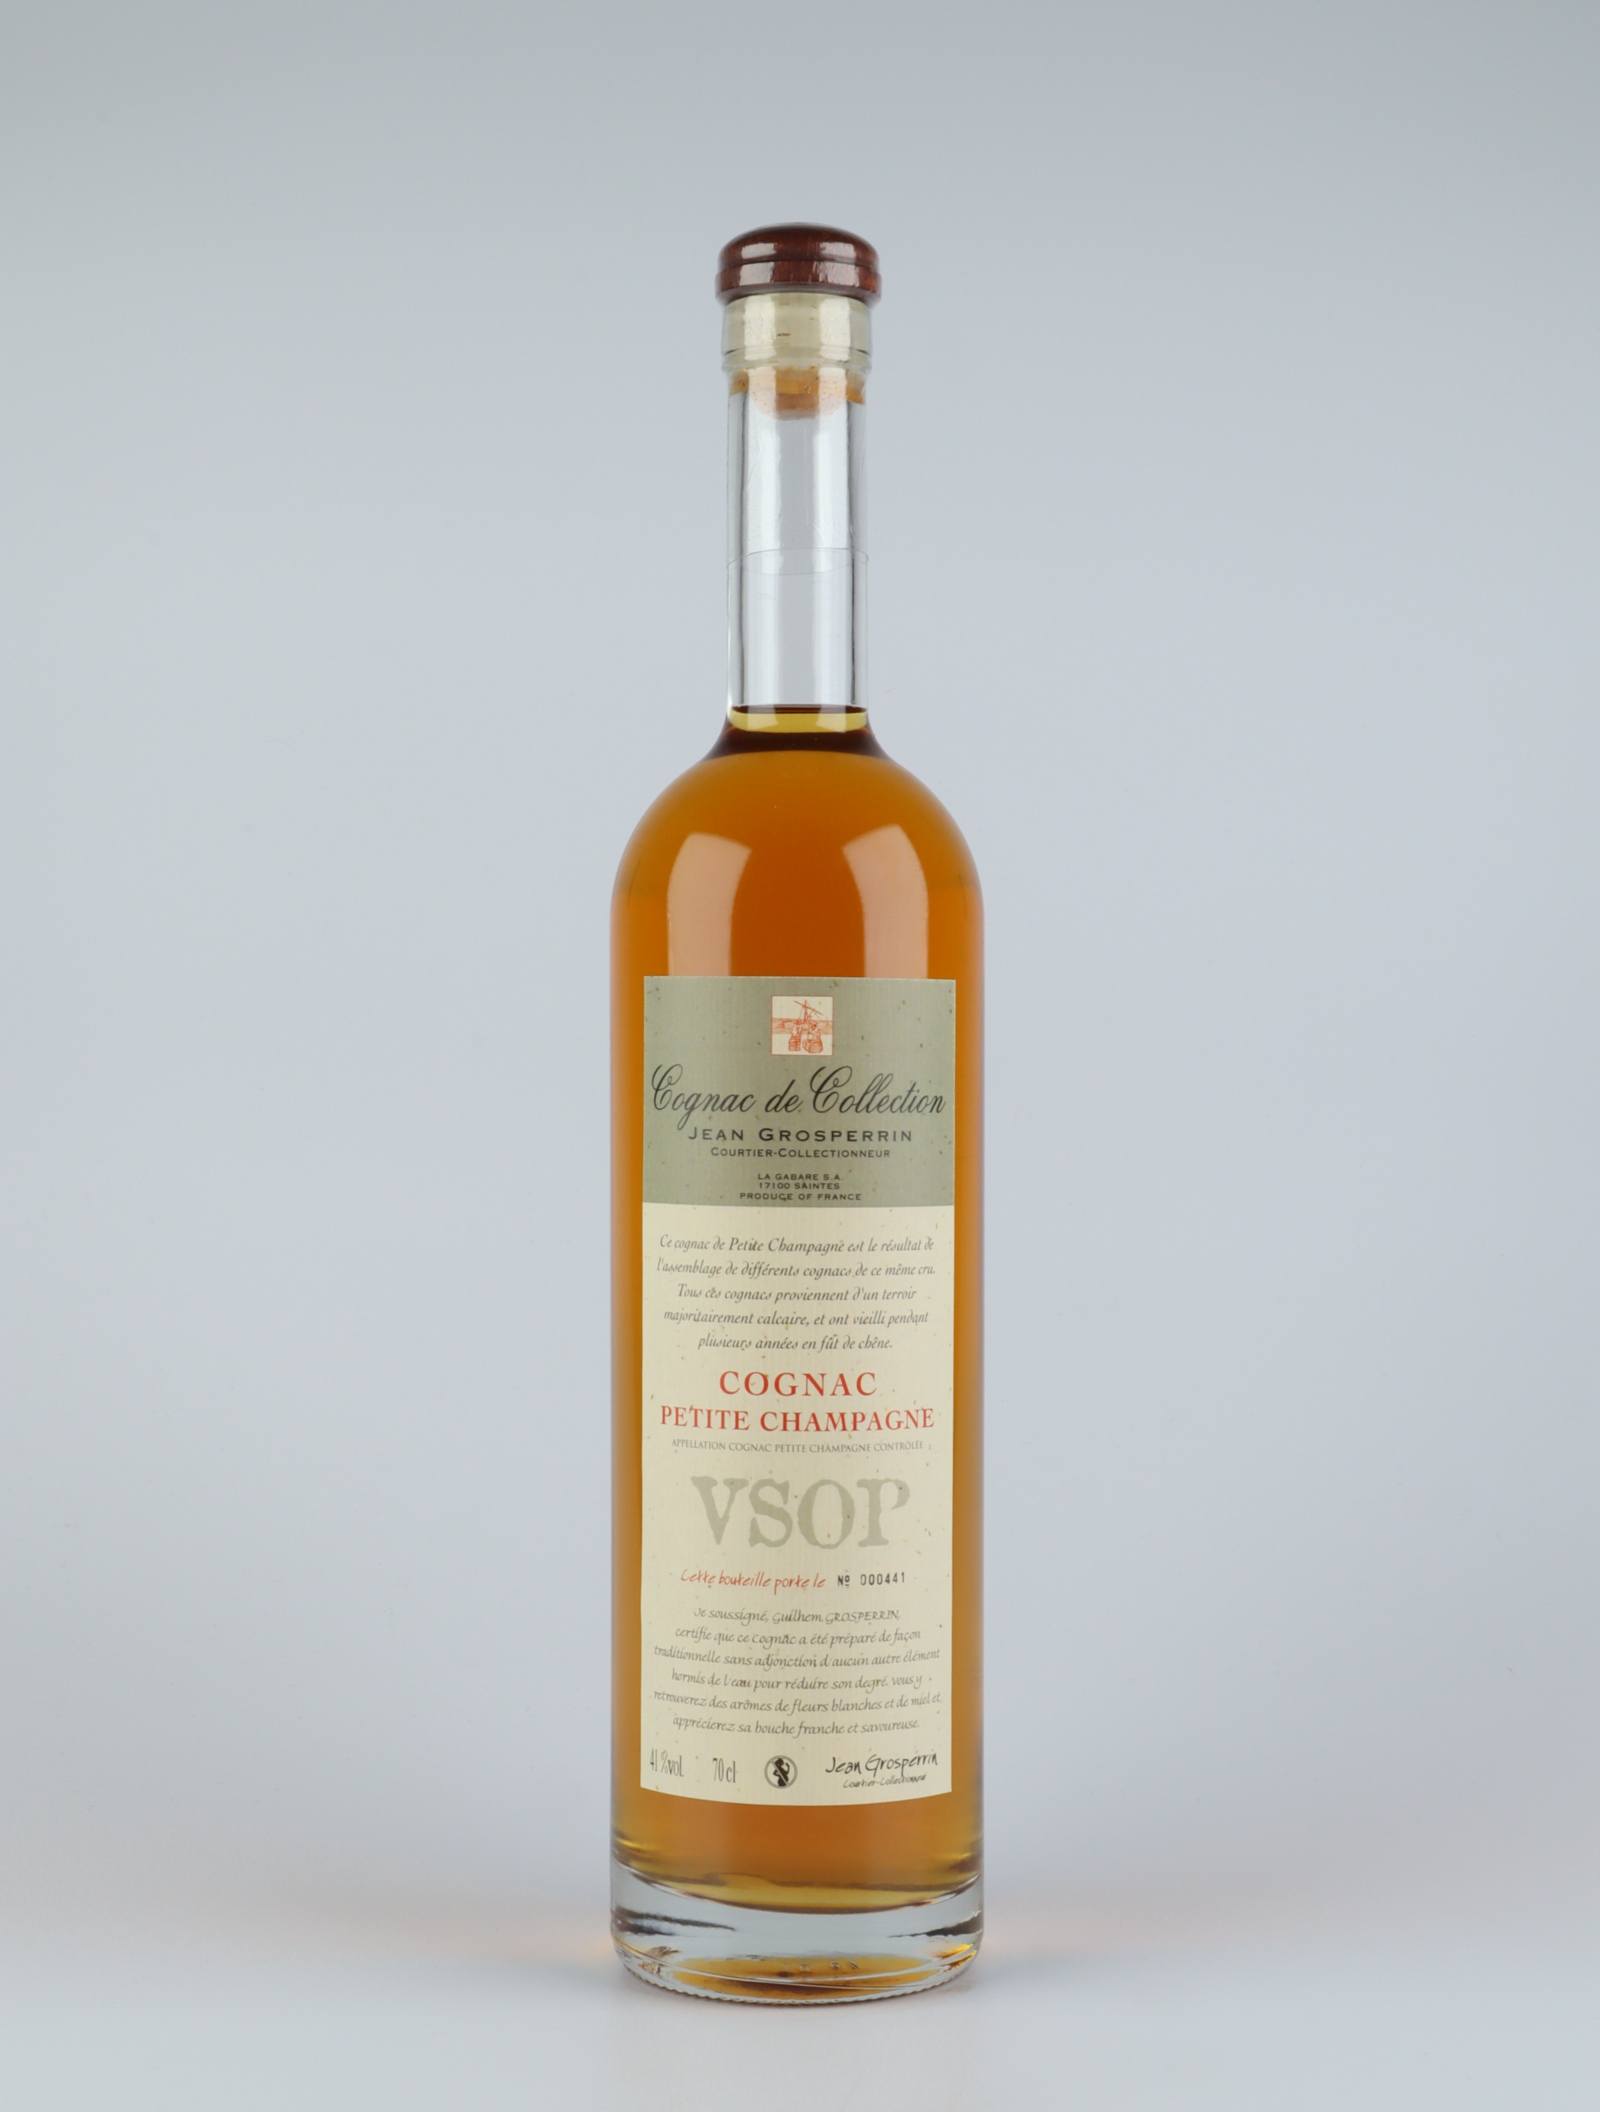 En flaske N.V. Cognac - VSOP - Petite Champagne Spiritus fra Jean Grosperrin, Cognac i Frankrig